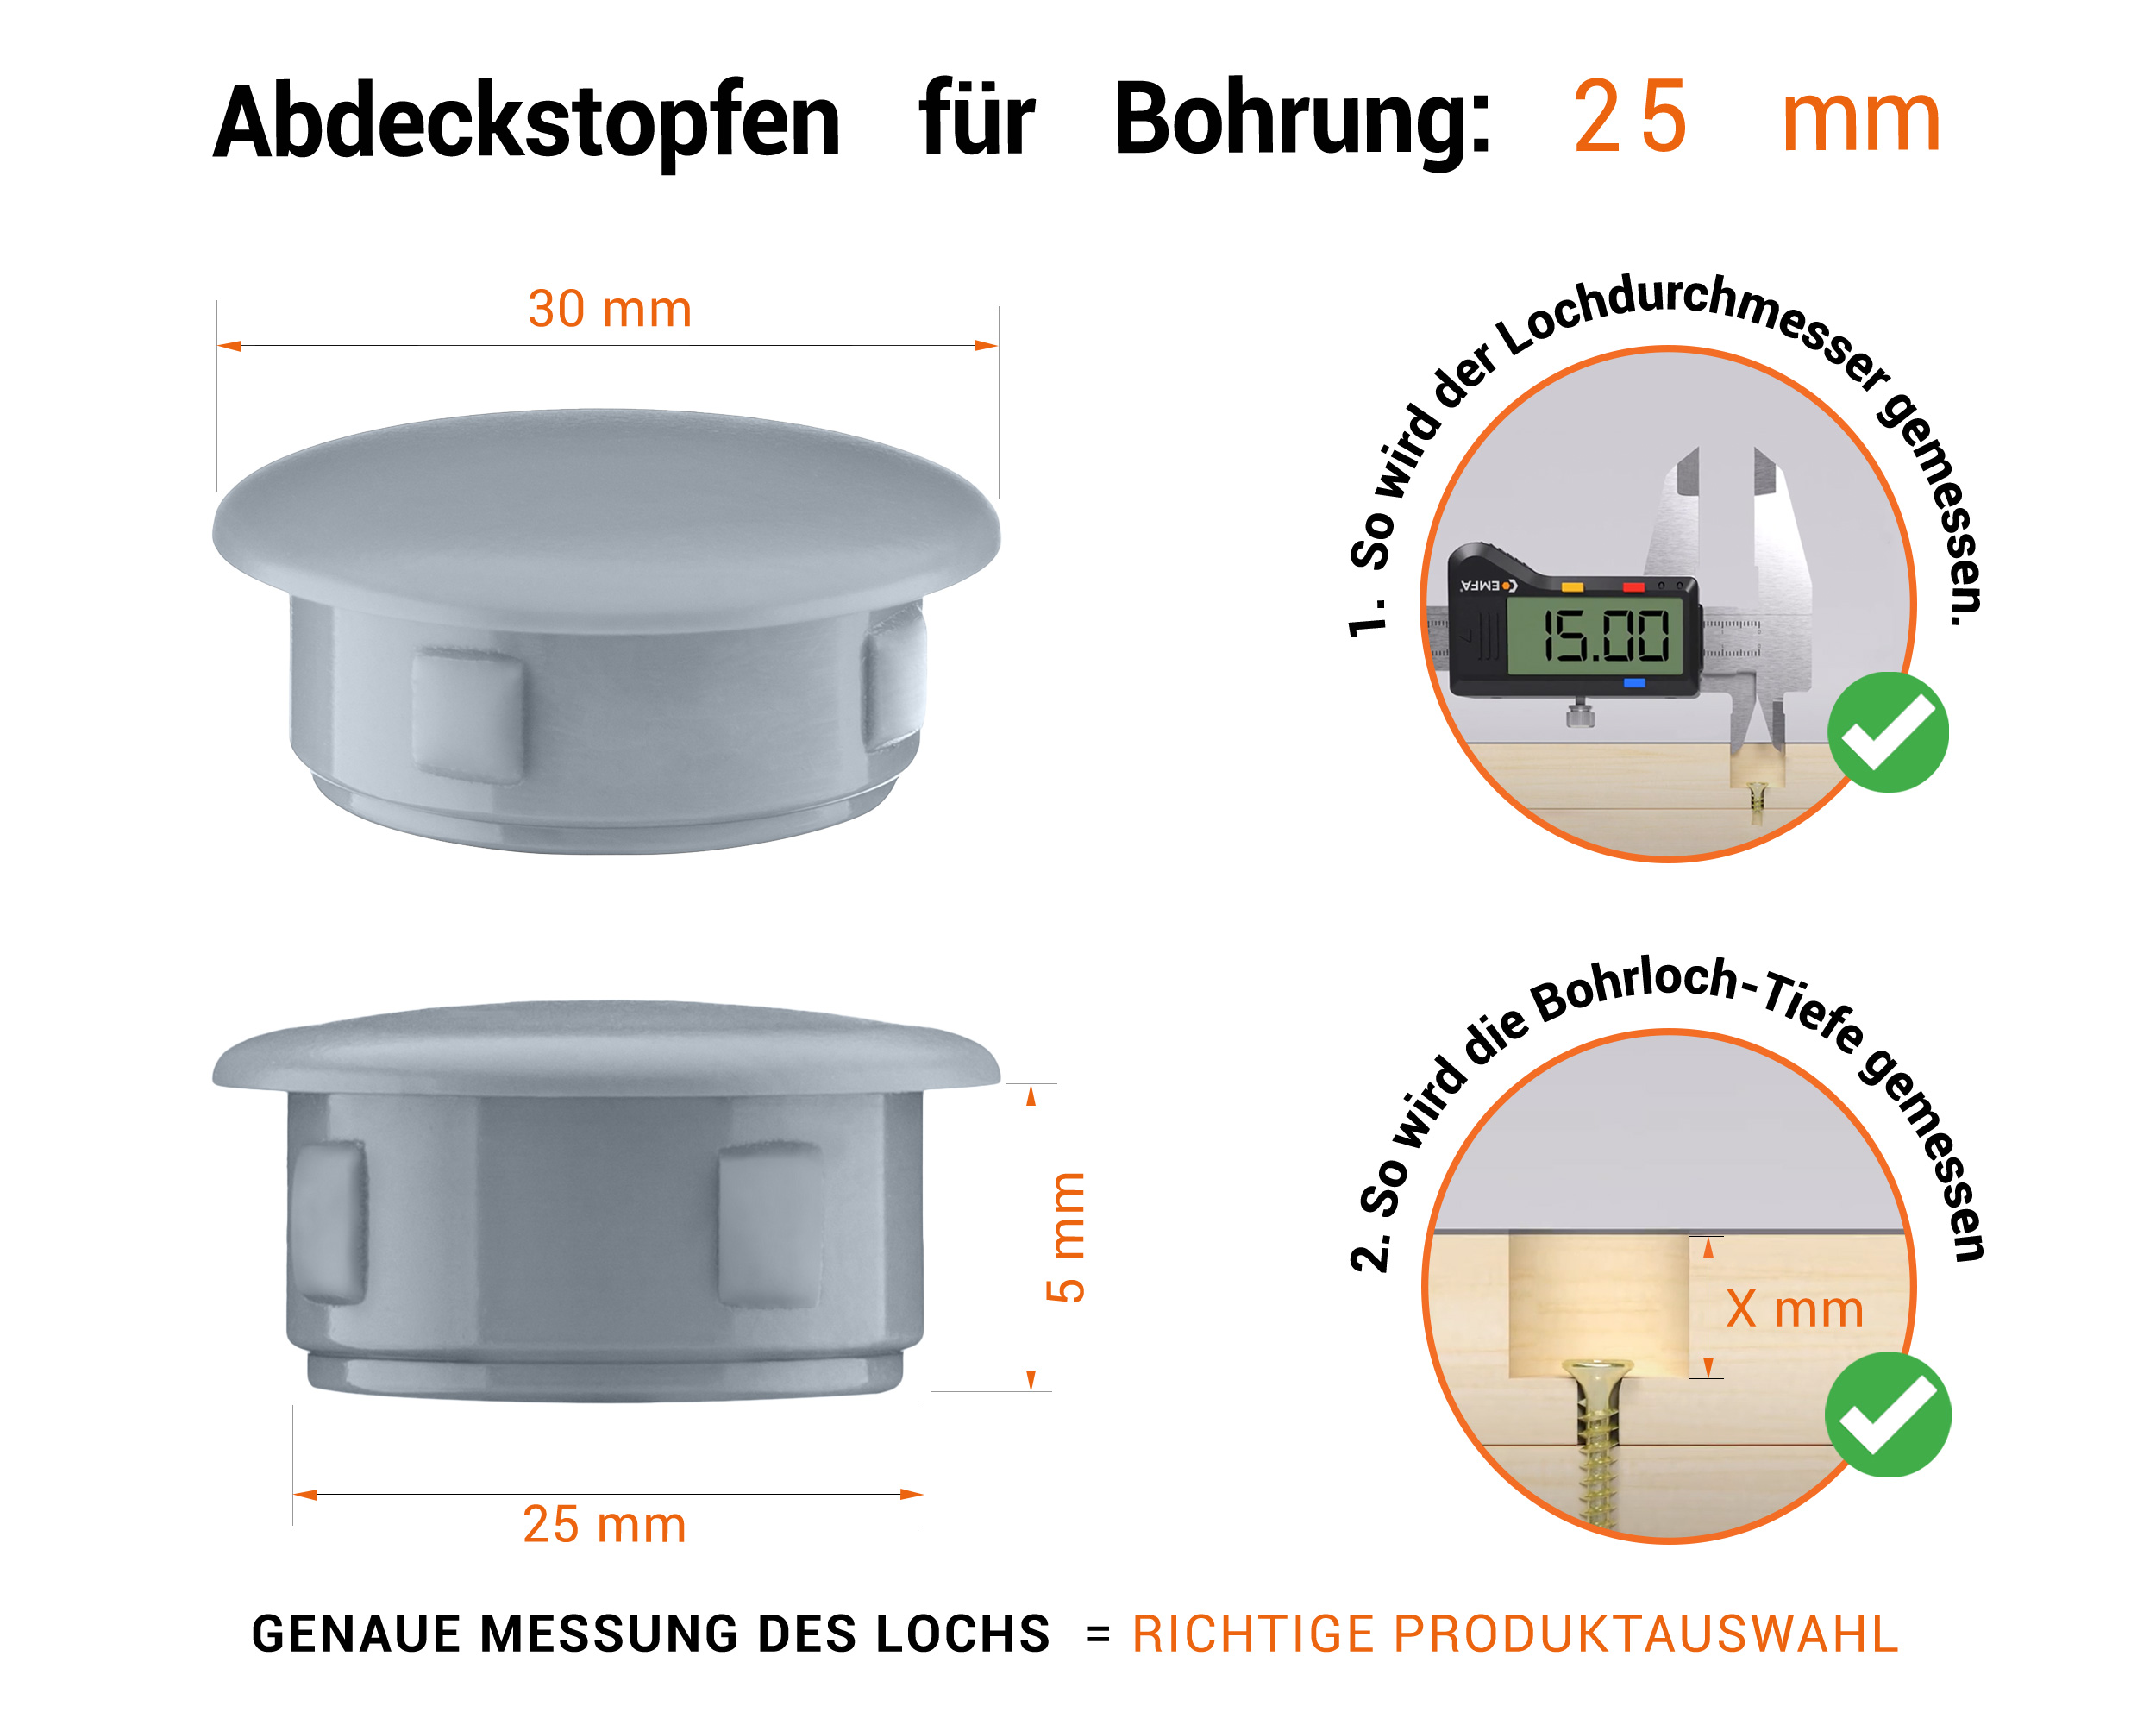 Graue Blindstopfen aus Kunststoff für Bohrung 25 mmmm mit technischen Abmessungen und Anleitung für korrekte Messung